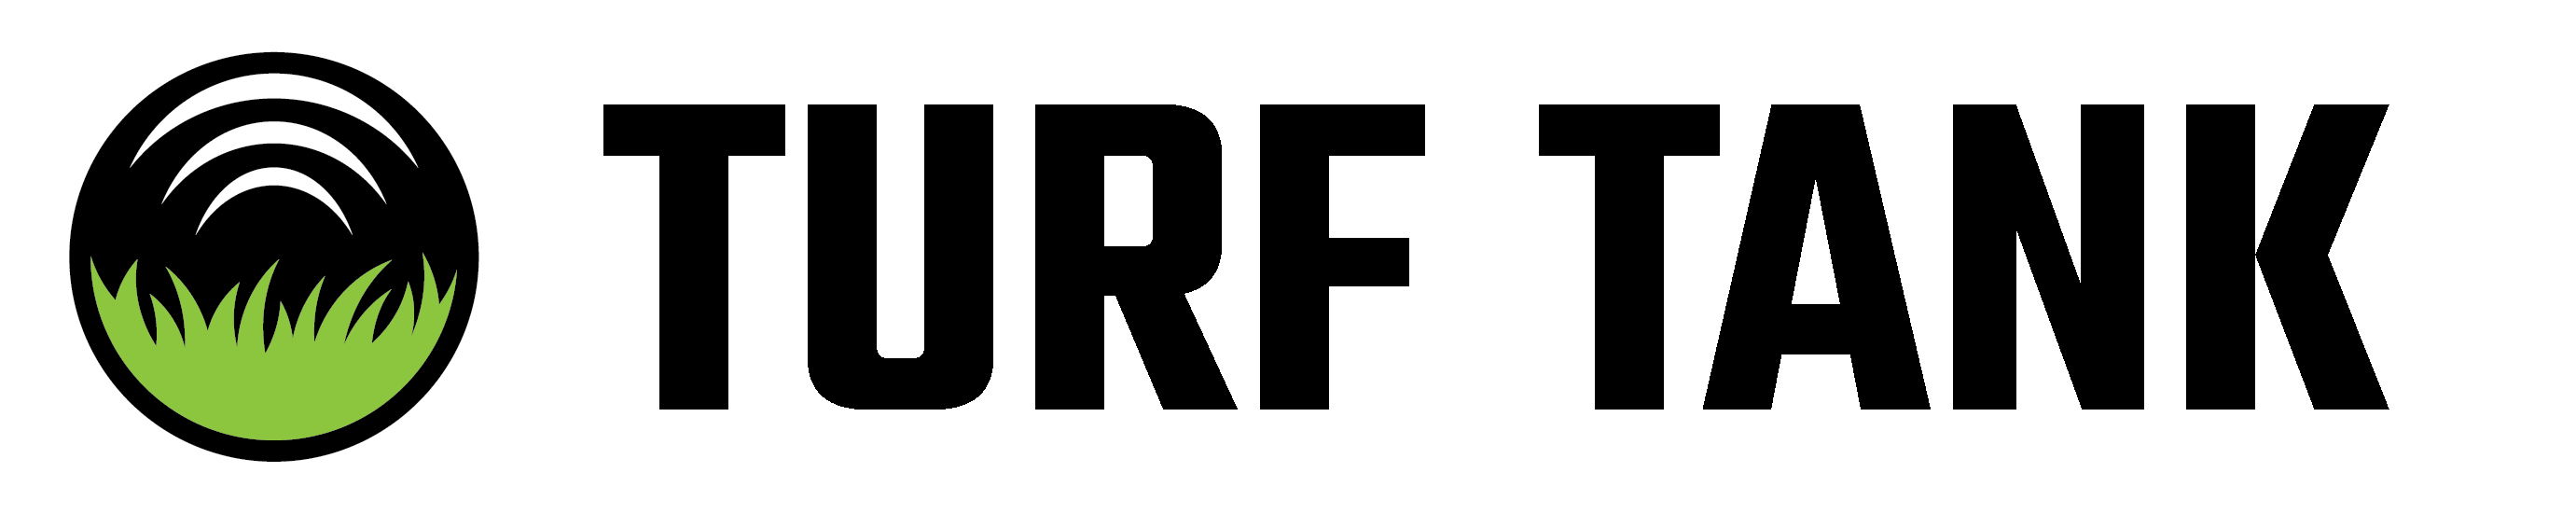 Turf Tank logo - dark bg